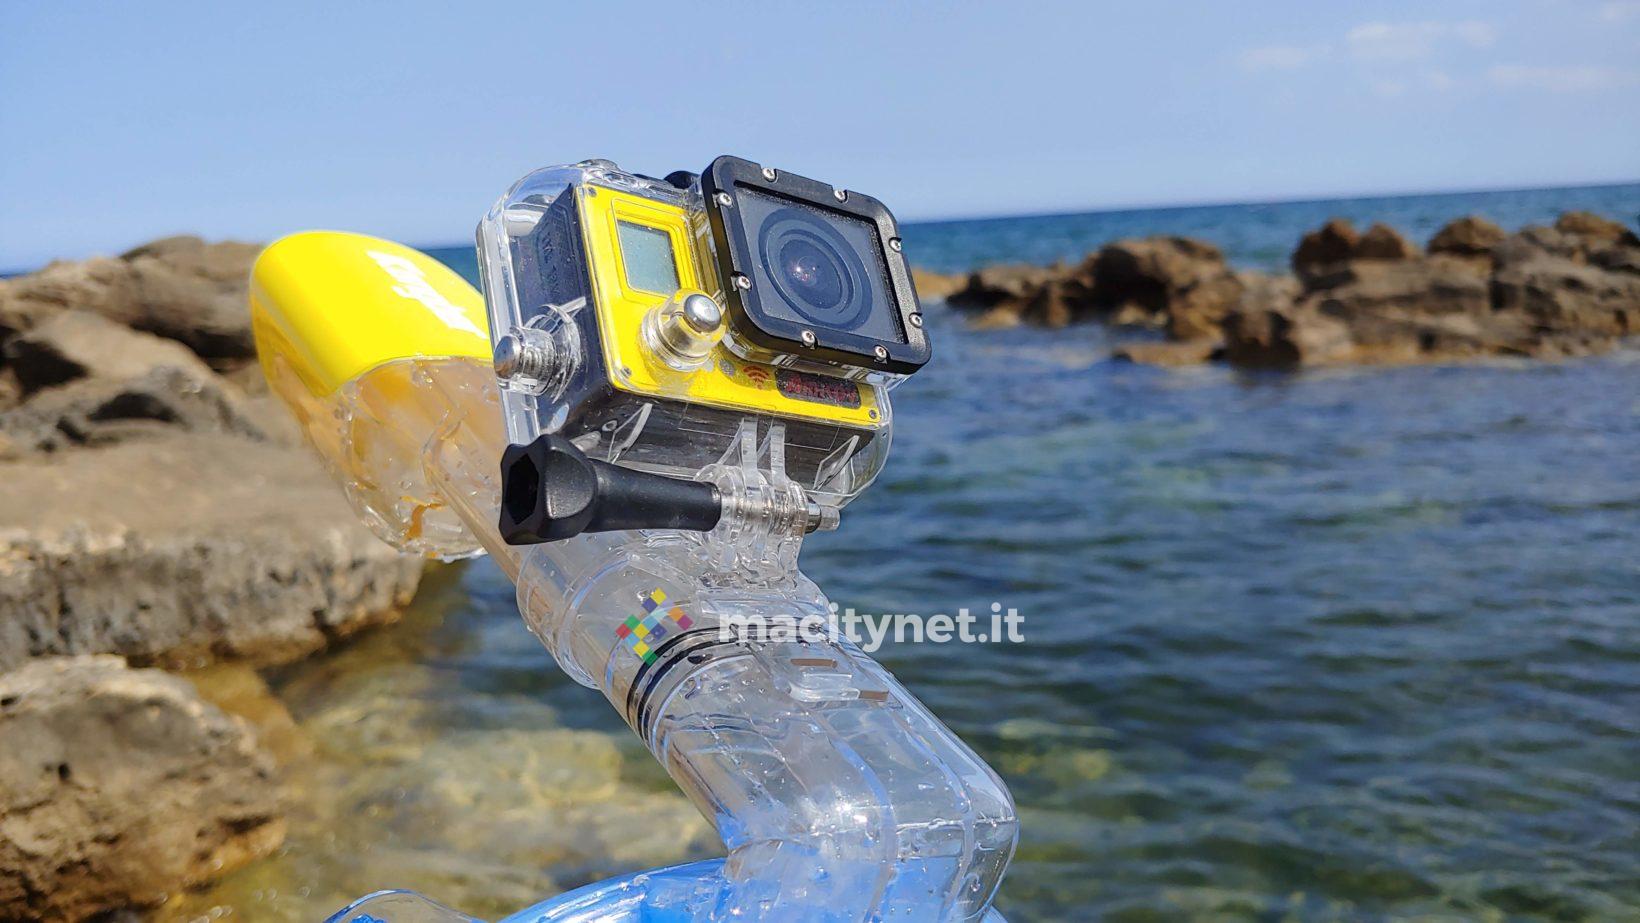 Recensione maschera panoramica Kungber, per lo snorkeling con action cam al seguito